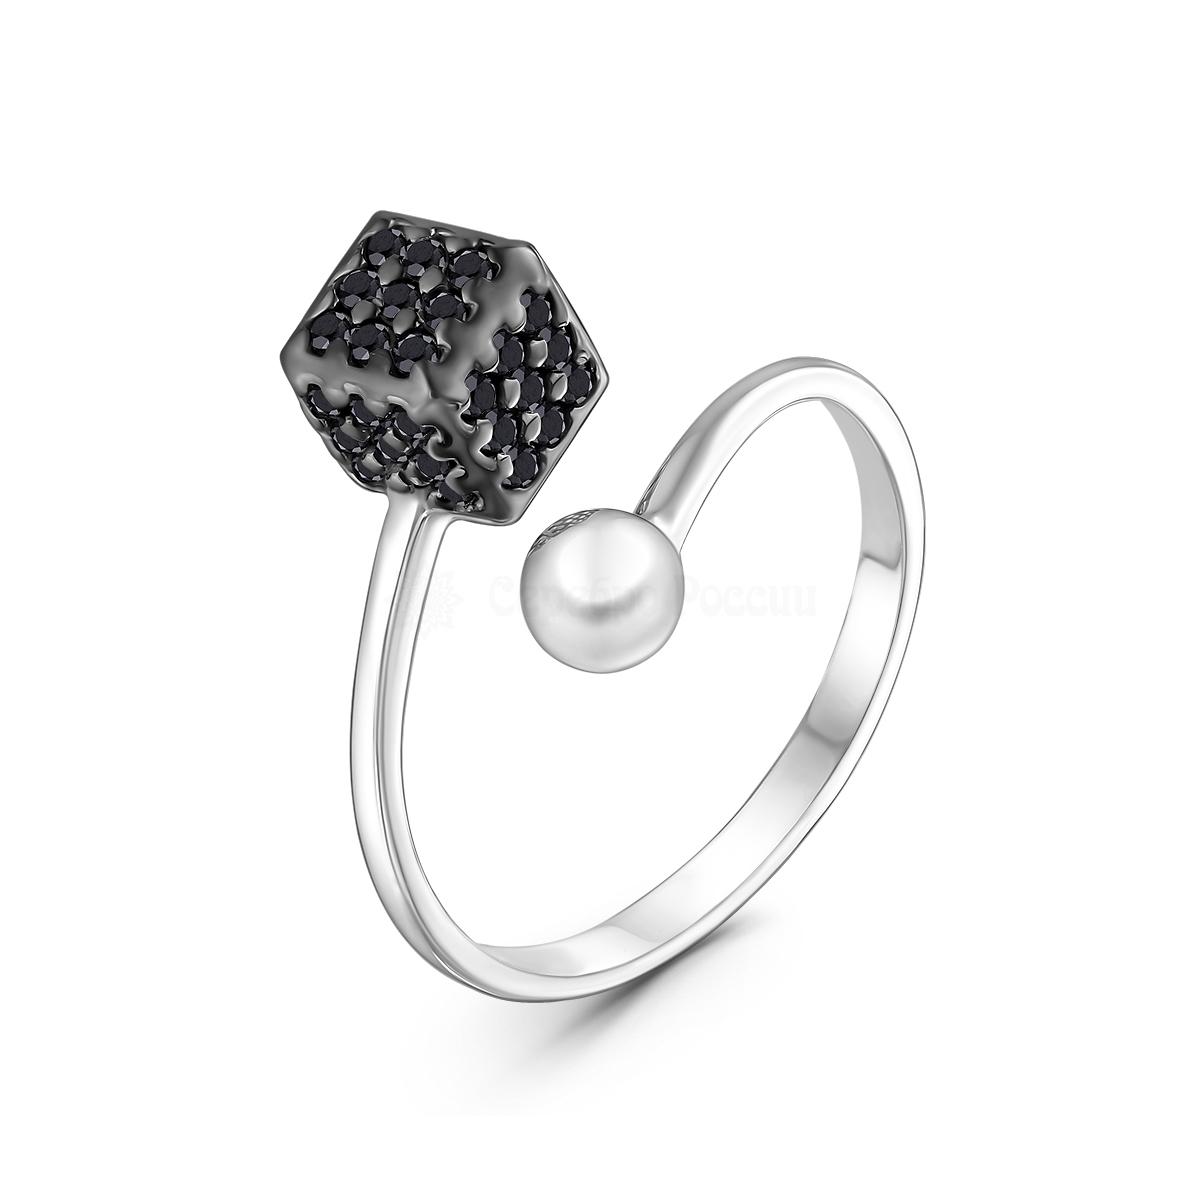 Кольцо Куб разъёмное из серебра с натуральной чёрной шпинелью родированное К-7629рч416